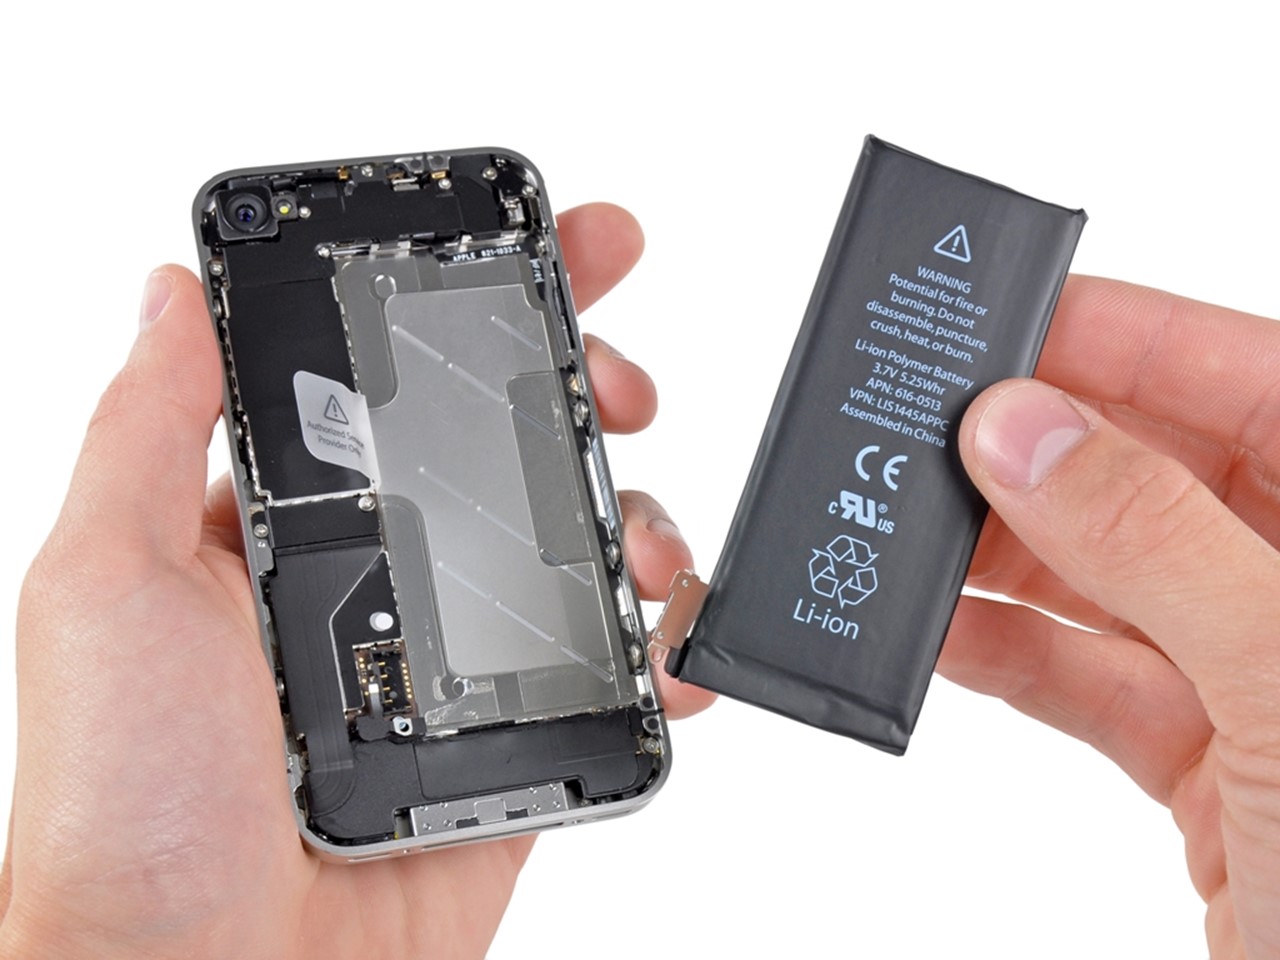 062417_0504_Cchxlcc4 Cách xử lý các vấn đề thường gặp khi pin iPhone bị lỗi